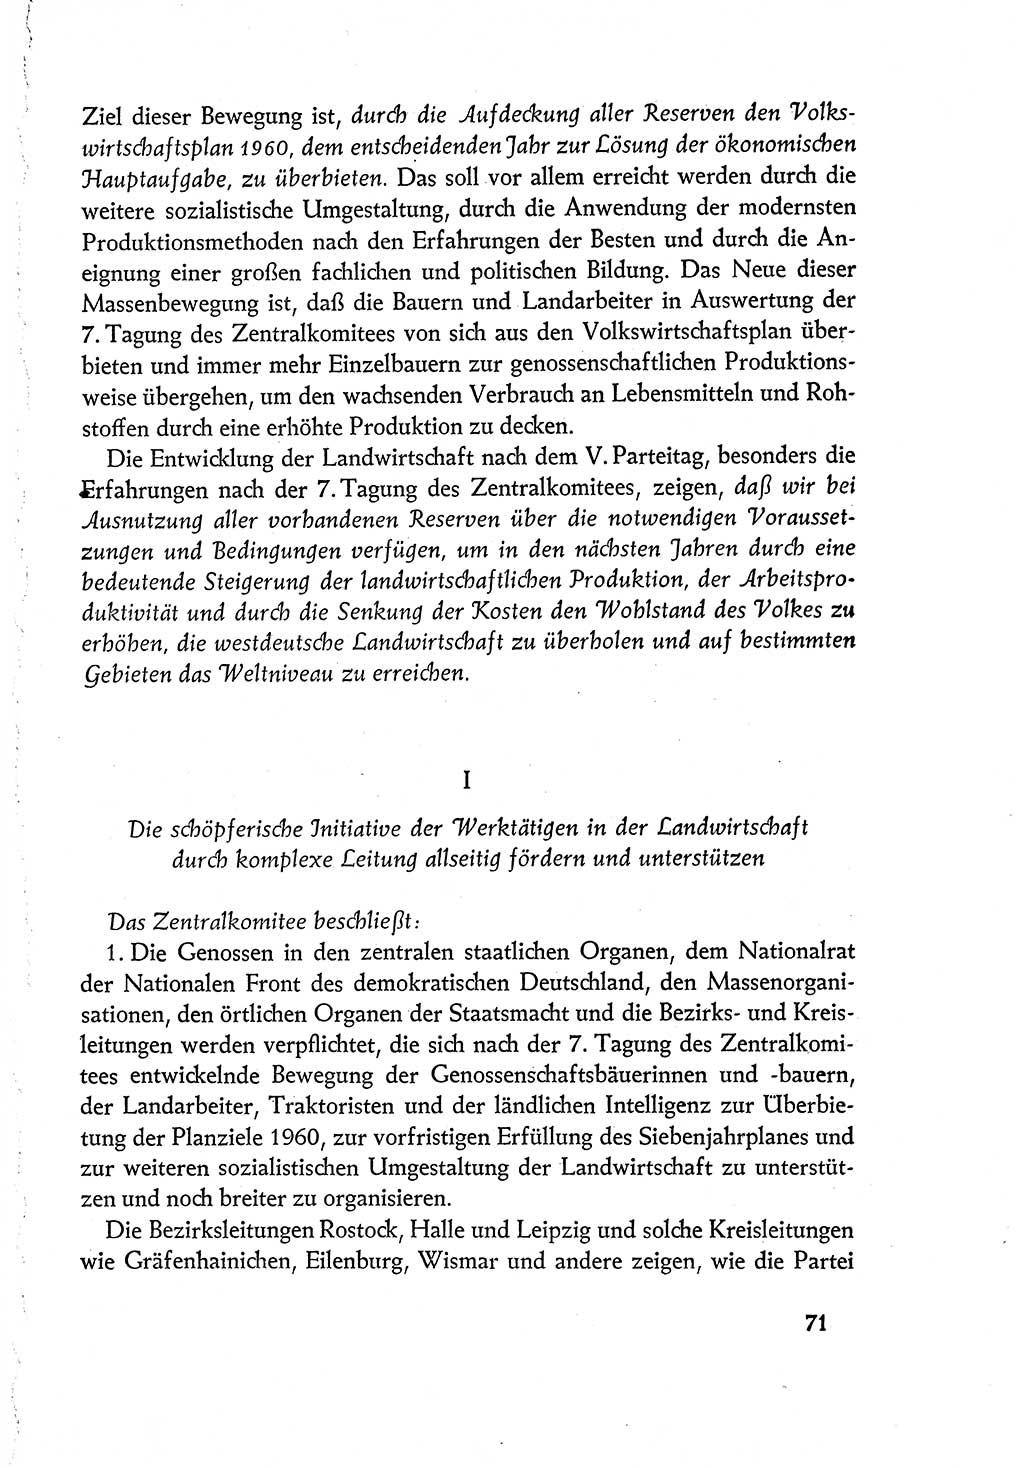 Dokumente der Sozialistischen Einheitspartei Deutschlands (SED) [Deutsche Demokratische Republik (DDR)] 1960-1961, Seite 71 (Dok. SED DDR 1960-1961, S. 71)